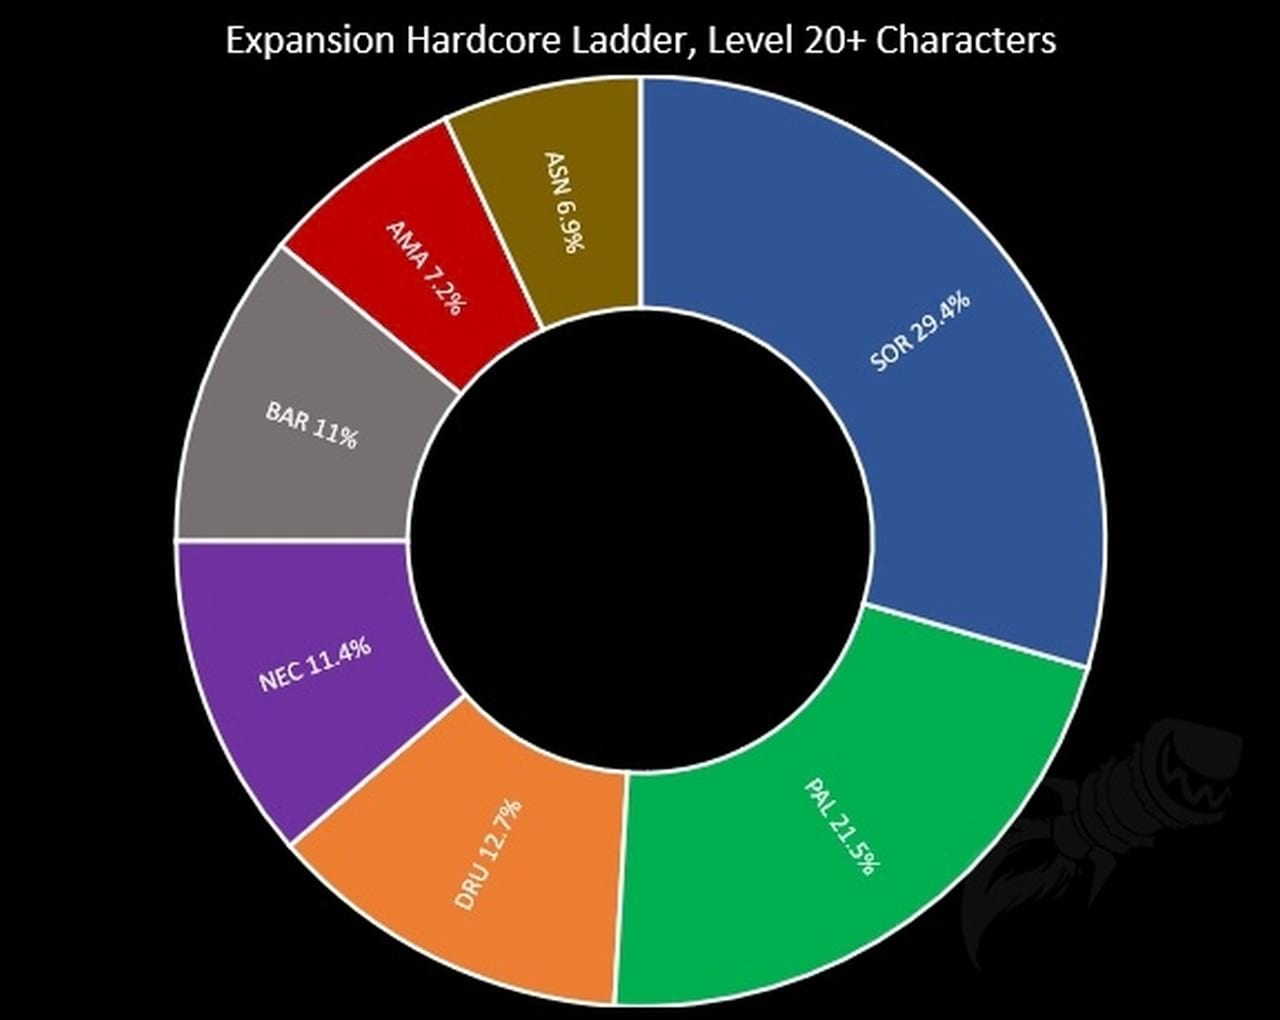 Die beliebtesten Klassen in der ersten Saison in Diablo 2 Ressurected im Hardcore-Modus